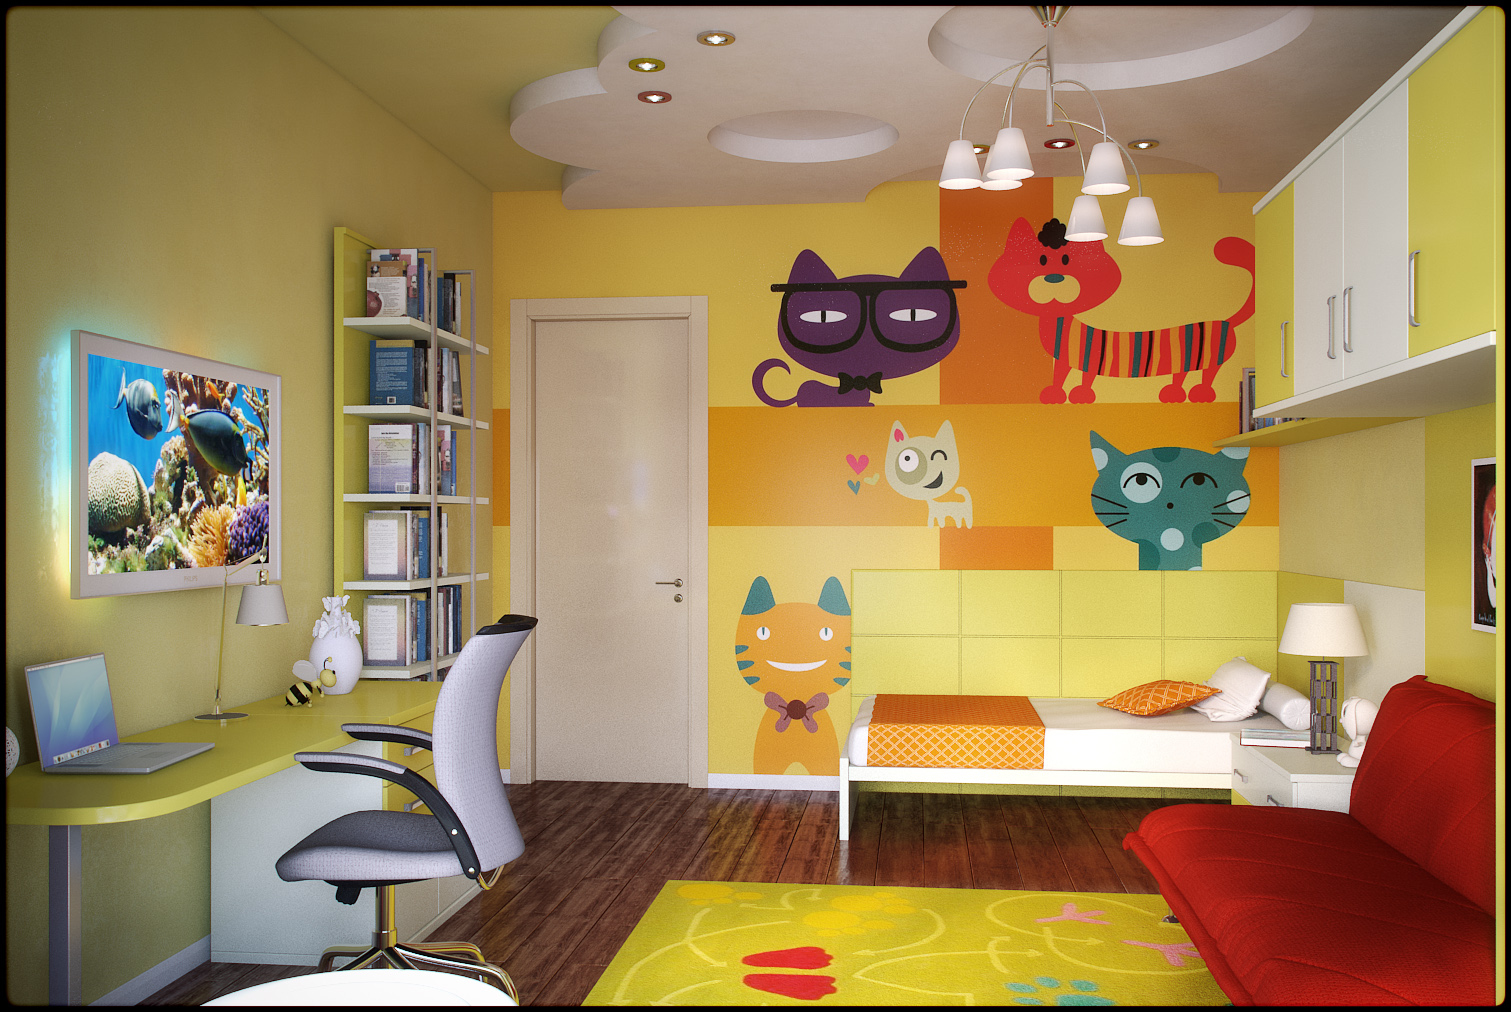 šviesus gyvenamojo kambario interjeras įvairiomis spalvomis